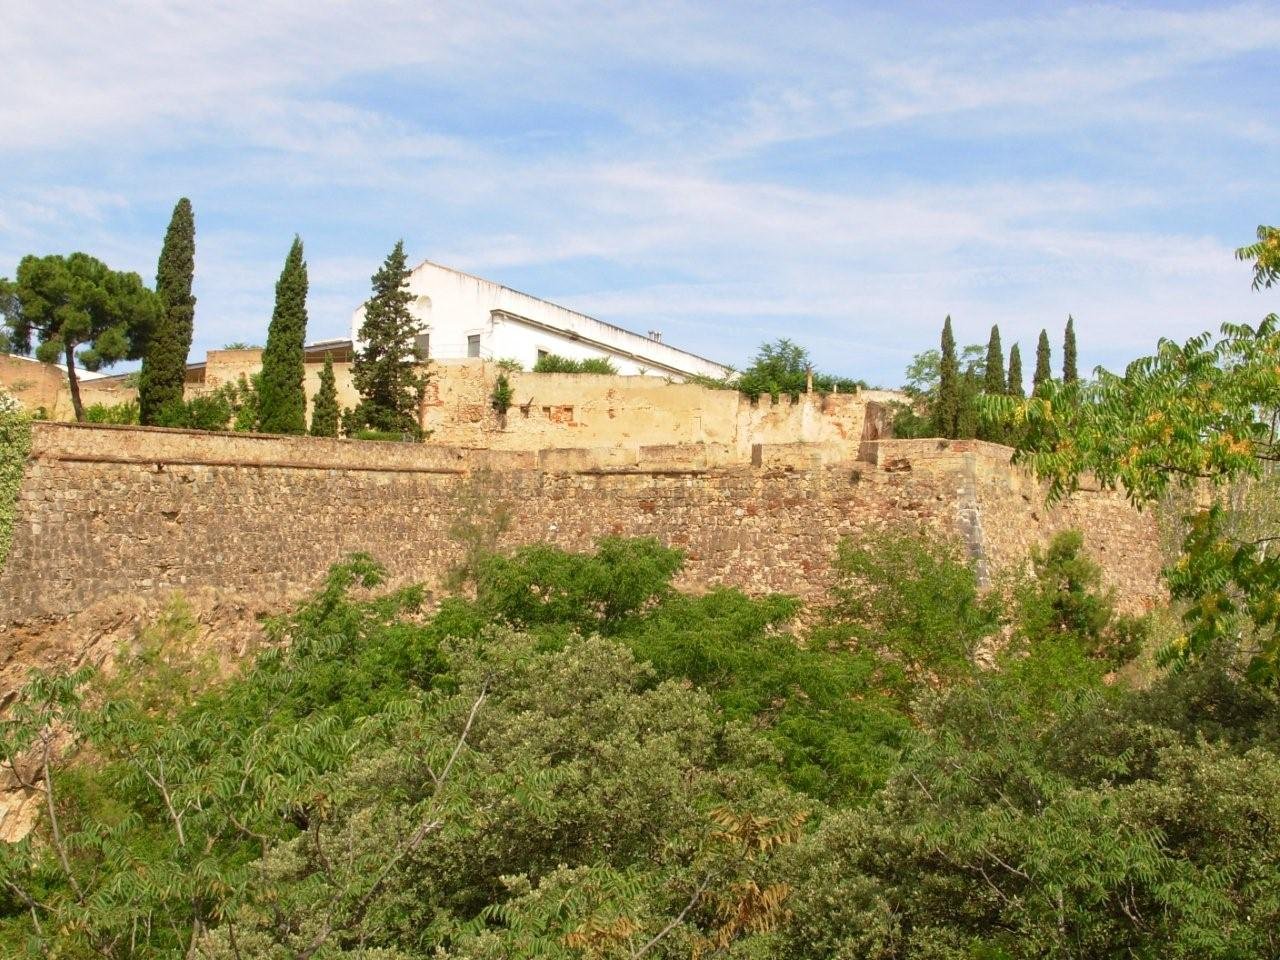 Semibaluarte de San Antonio (Badajoz)